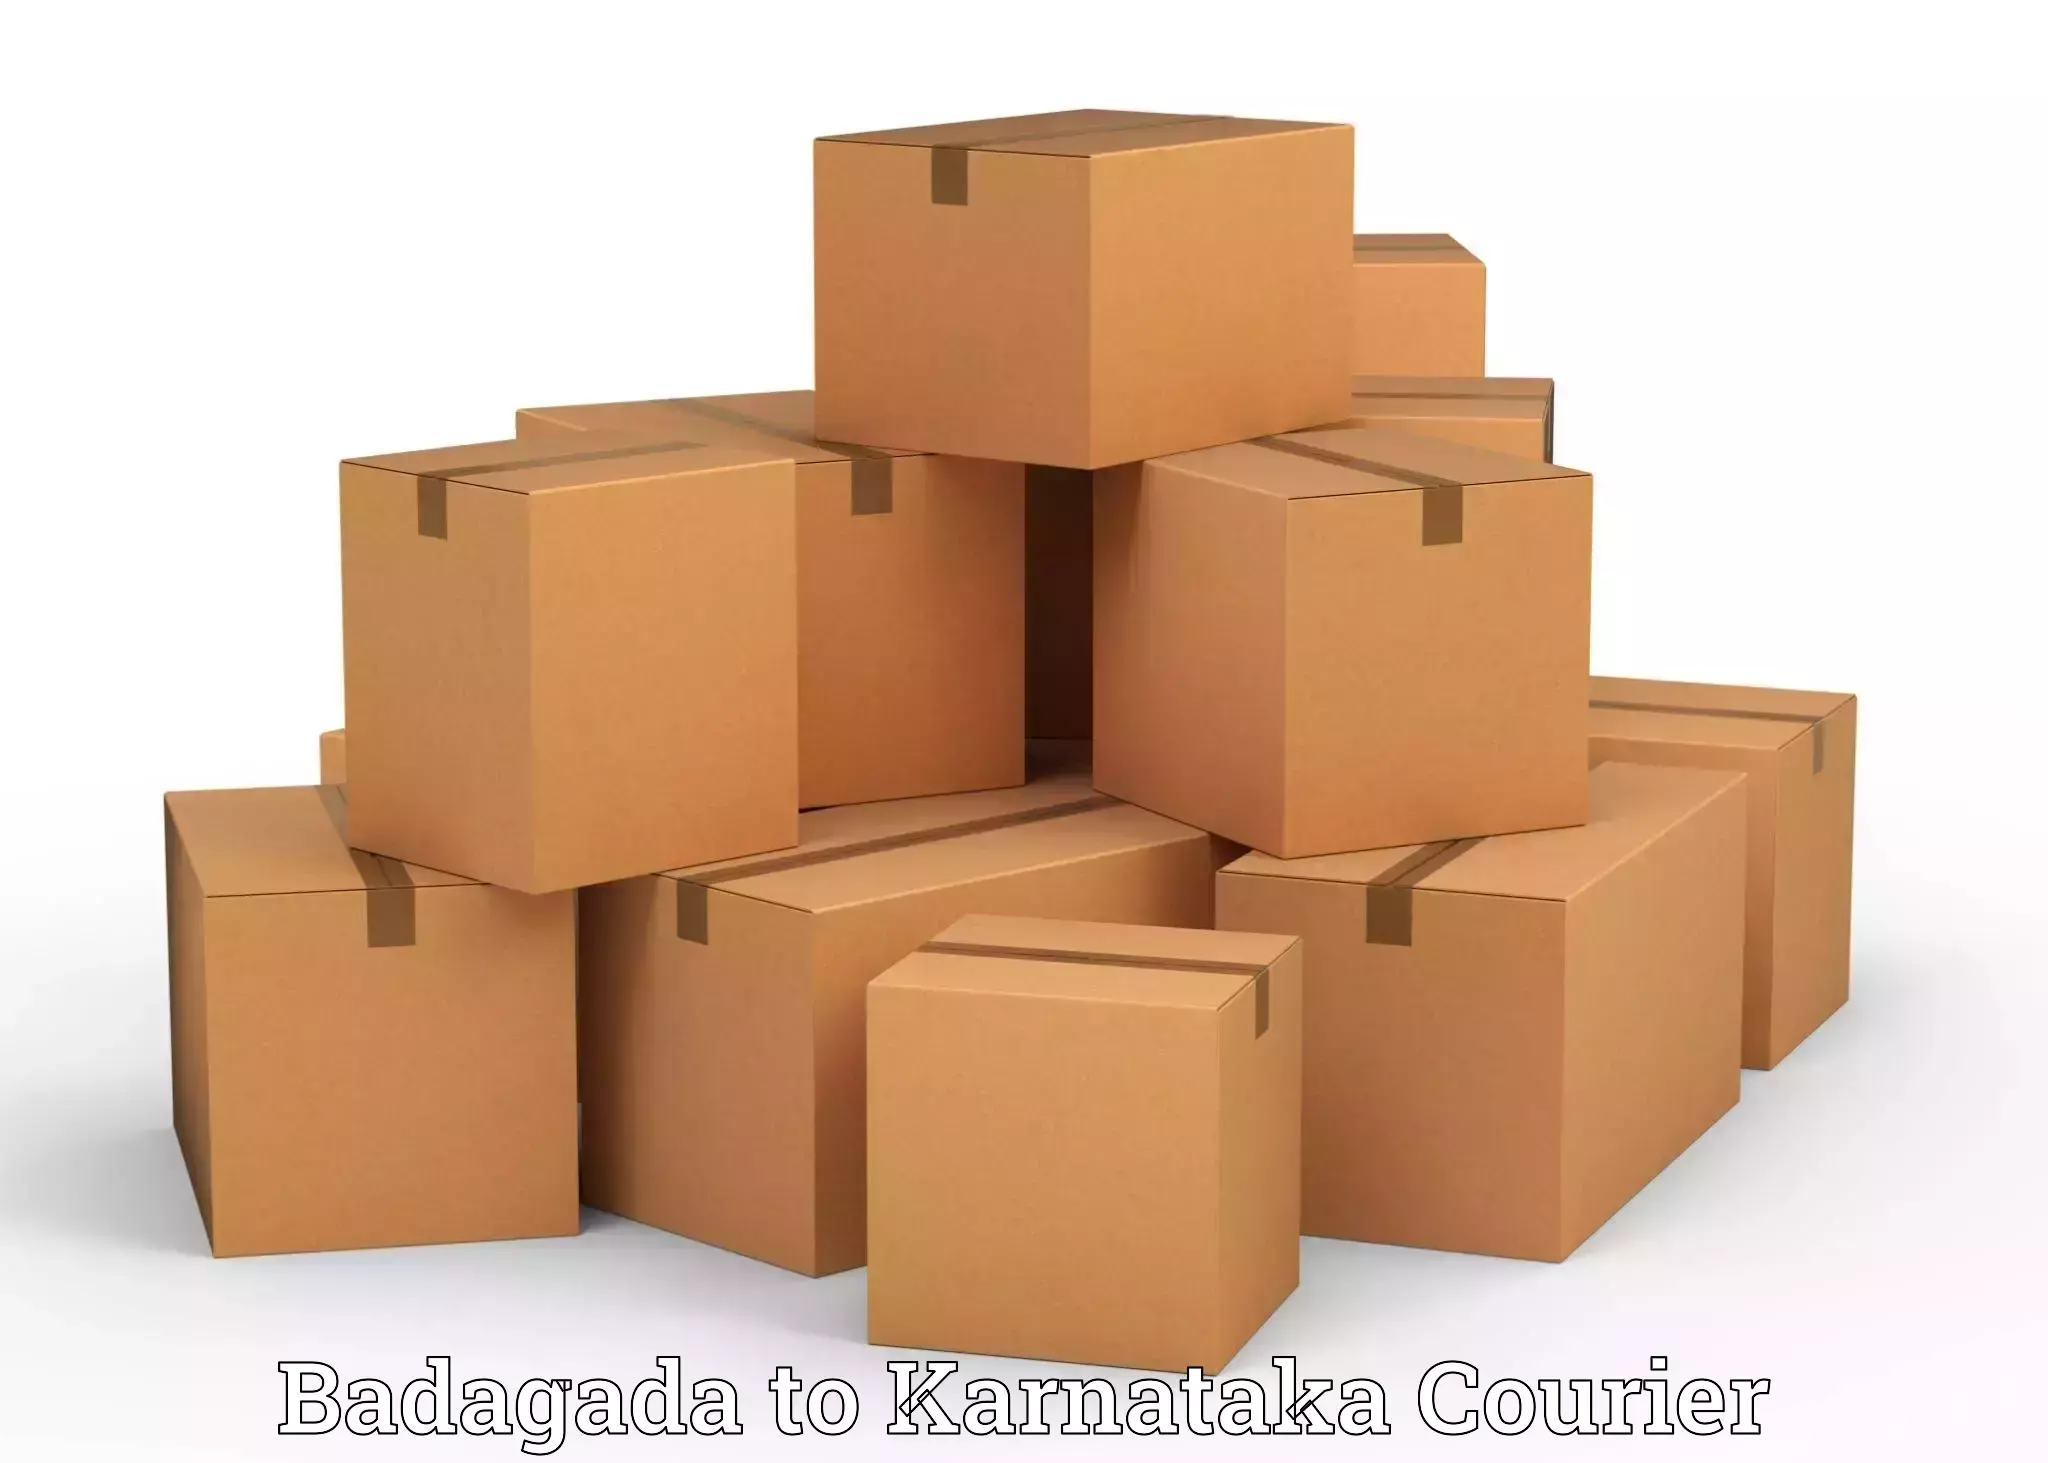 Furniture moving plans in Badagada to Karnataka